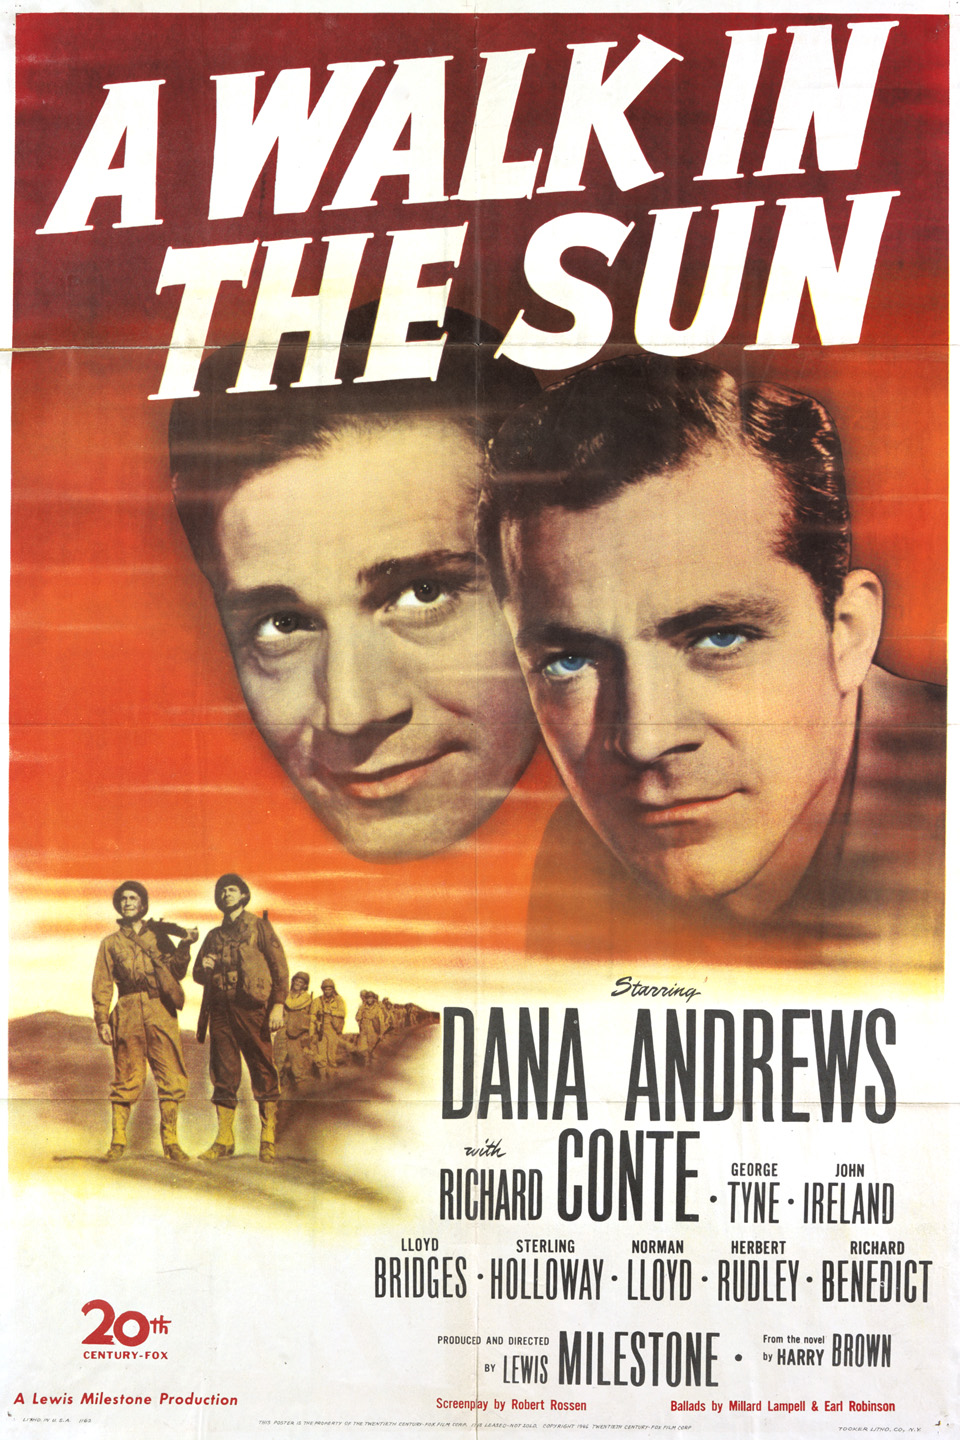 A WALK IN THE SUN (1945)